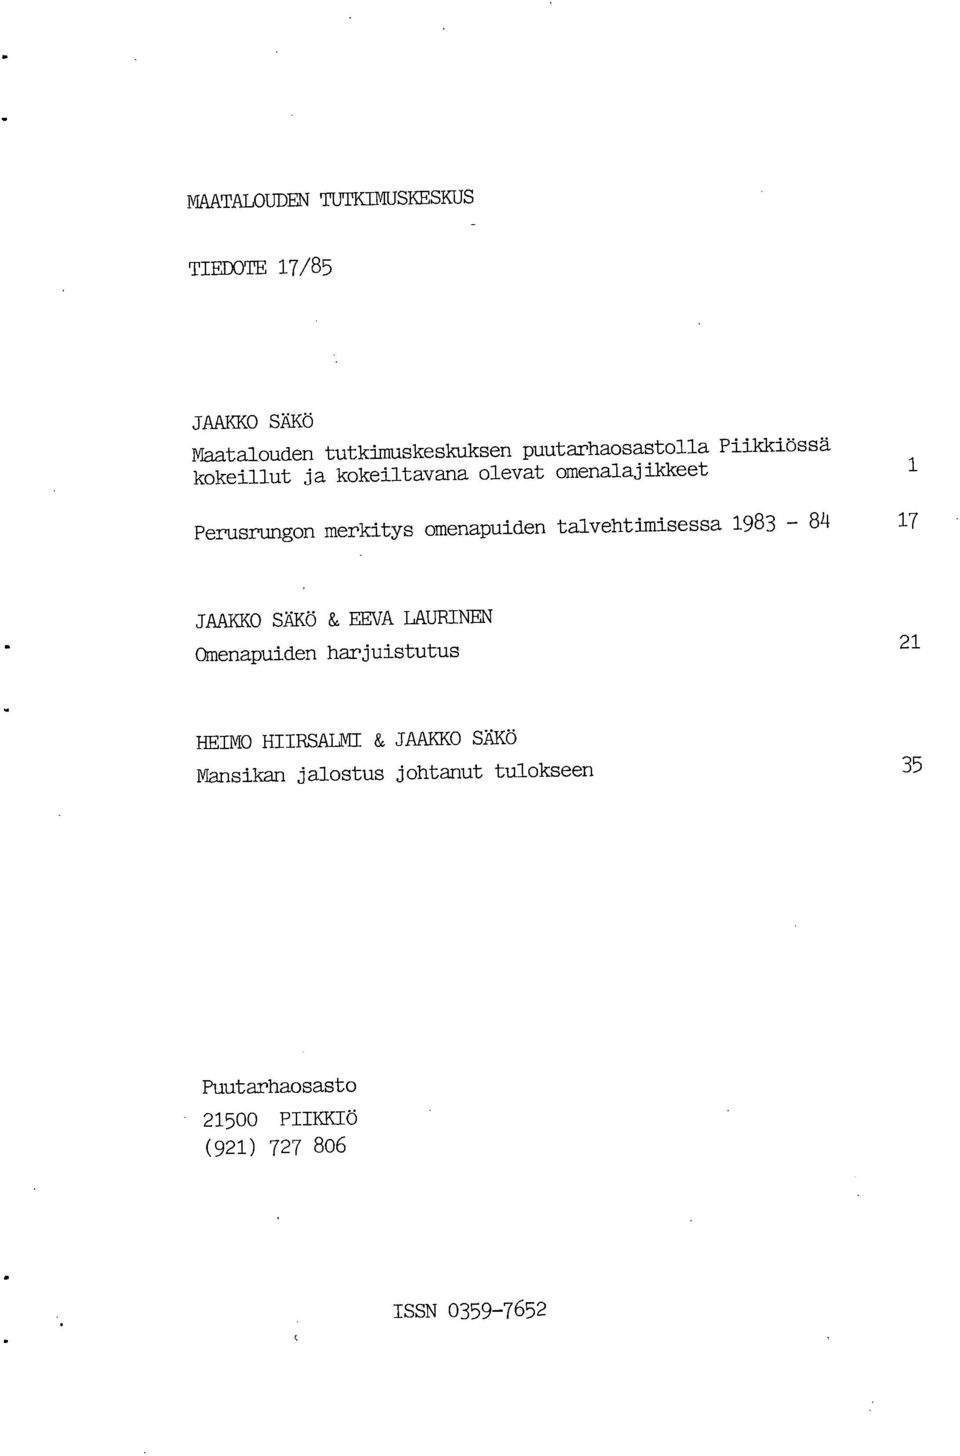 talvehtimisessa 1983-84 17 JAAKKO SÄKÖ & EEVA LAURINEN Omenapuiden harjuistutus 21 HEIMO HIIRSALMI &